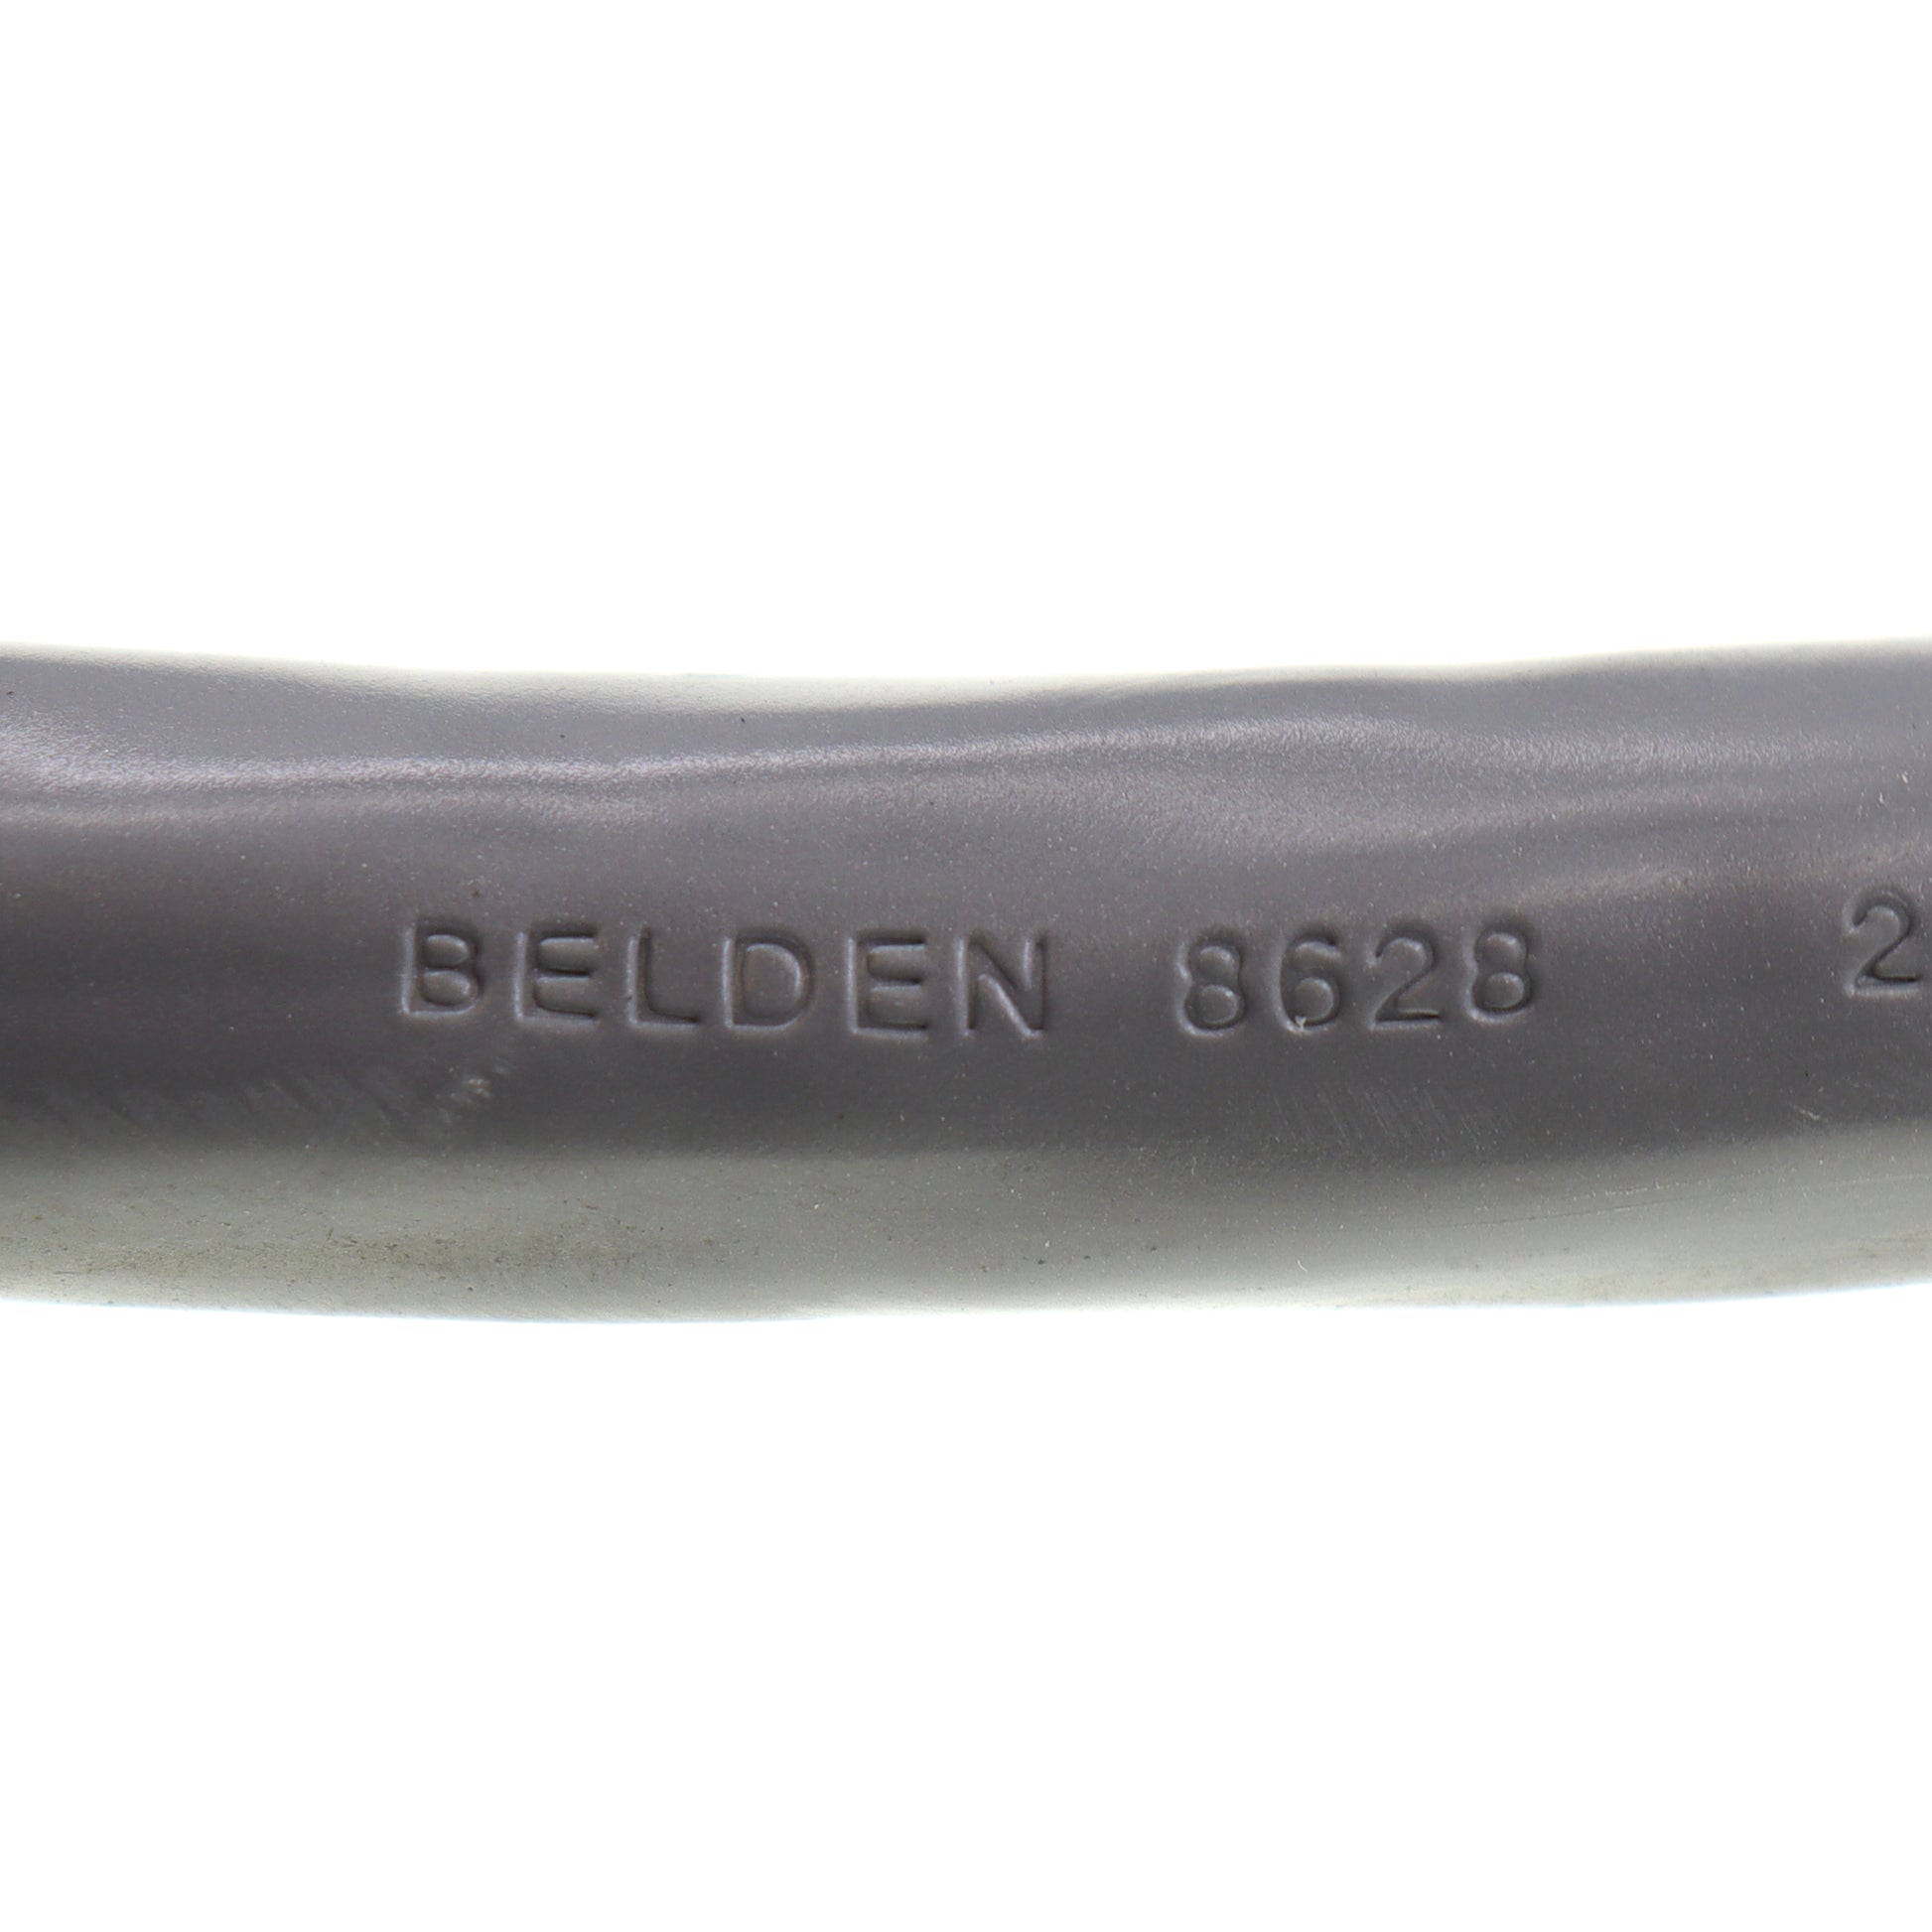 Belden 8628-PER-FT